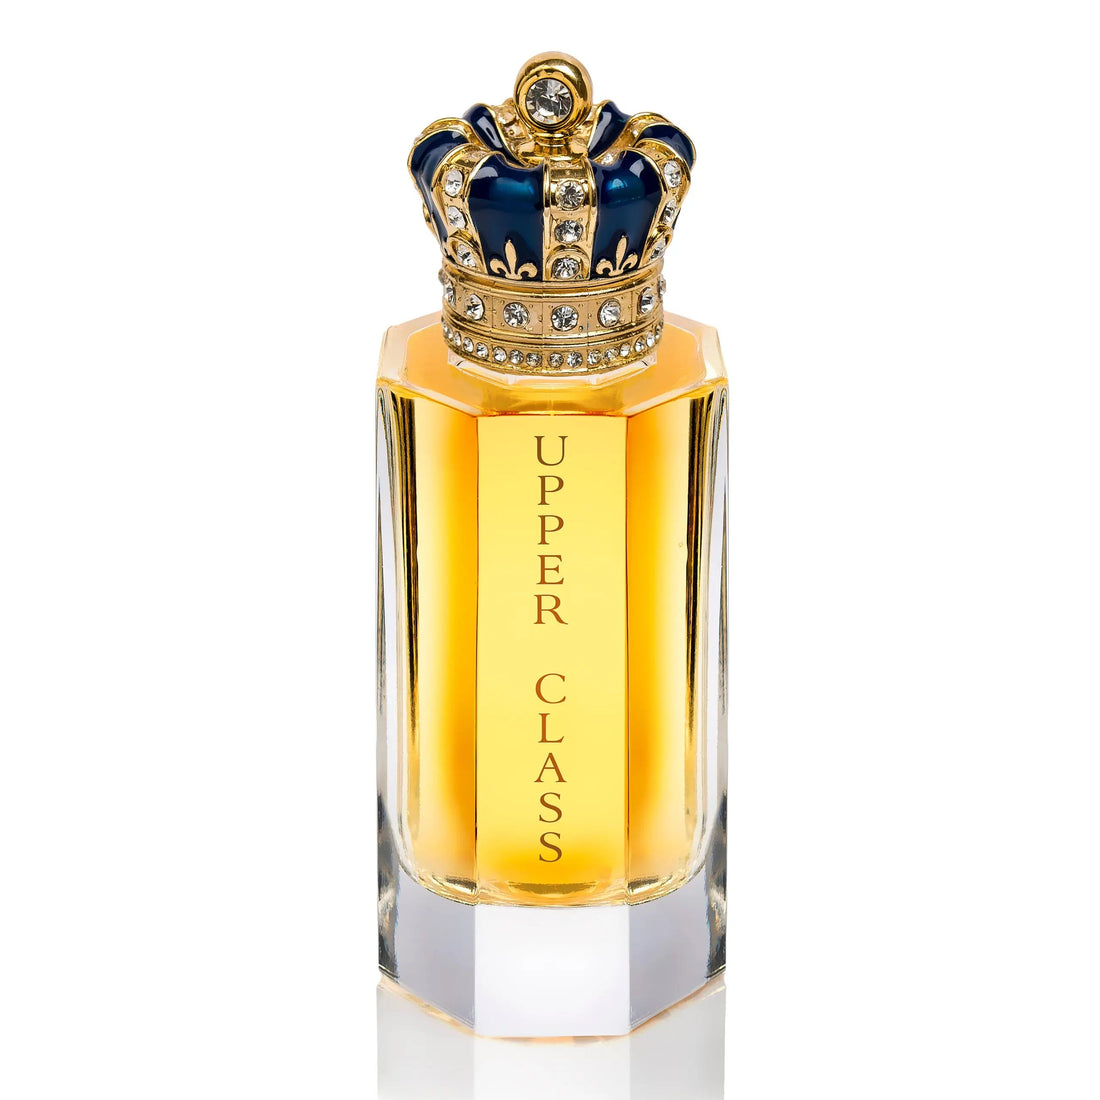 Oberklasse Royal Crown – 100 ml